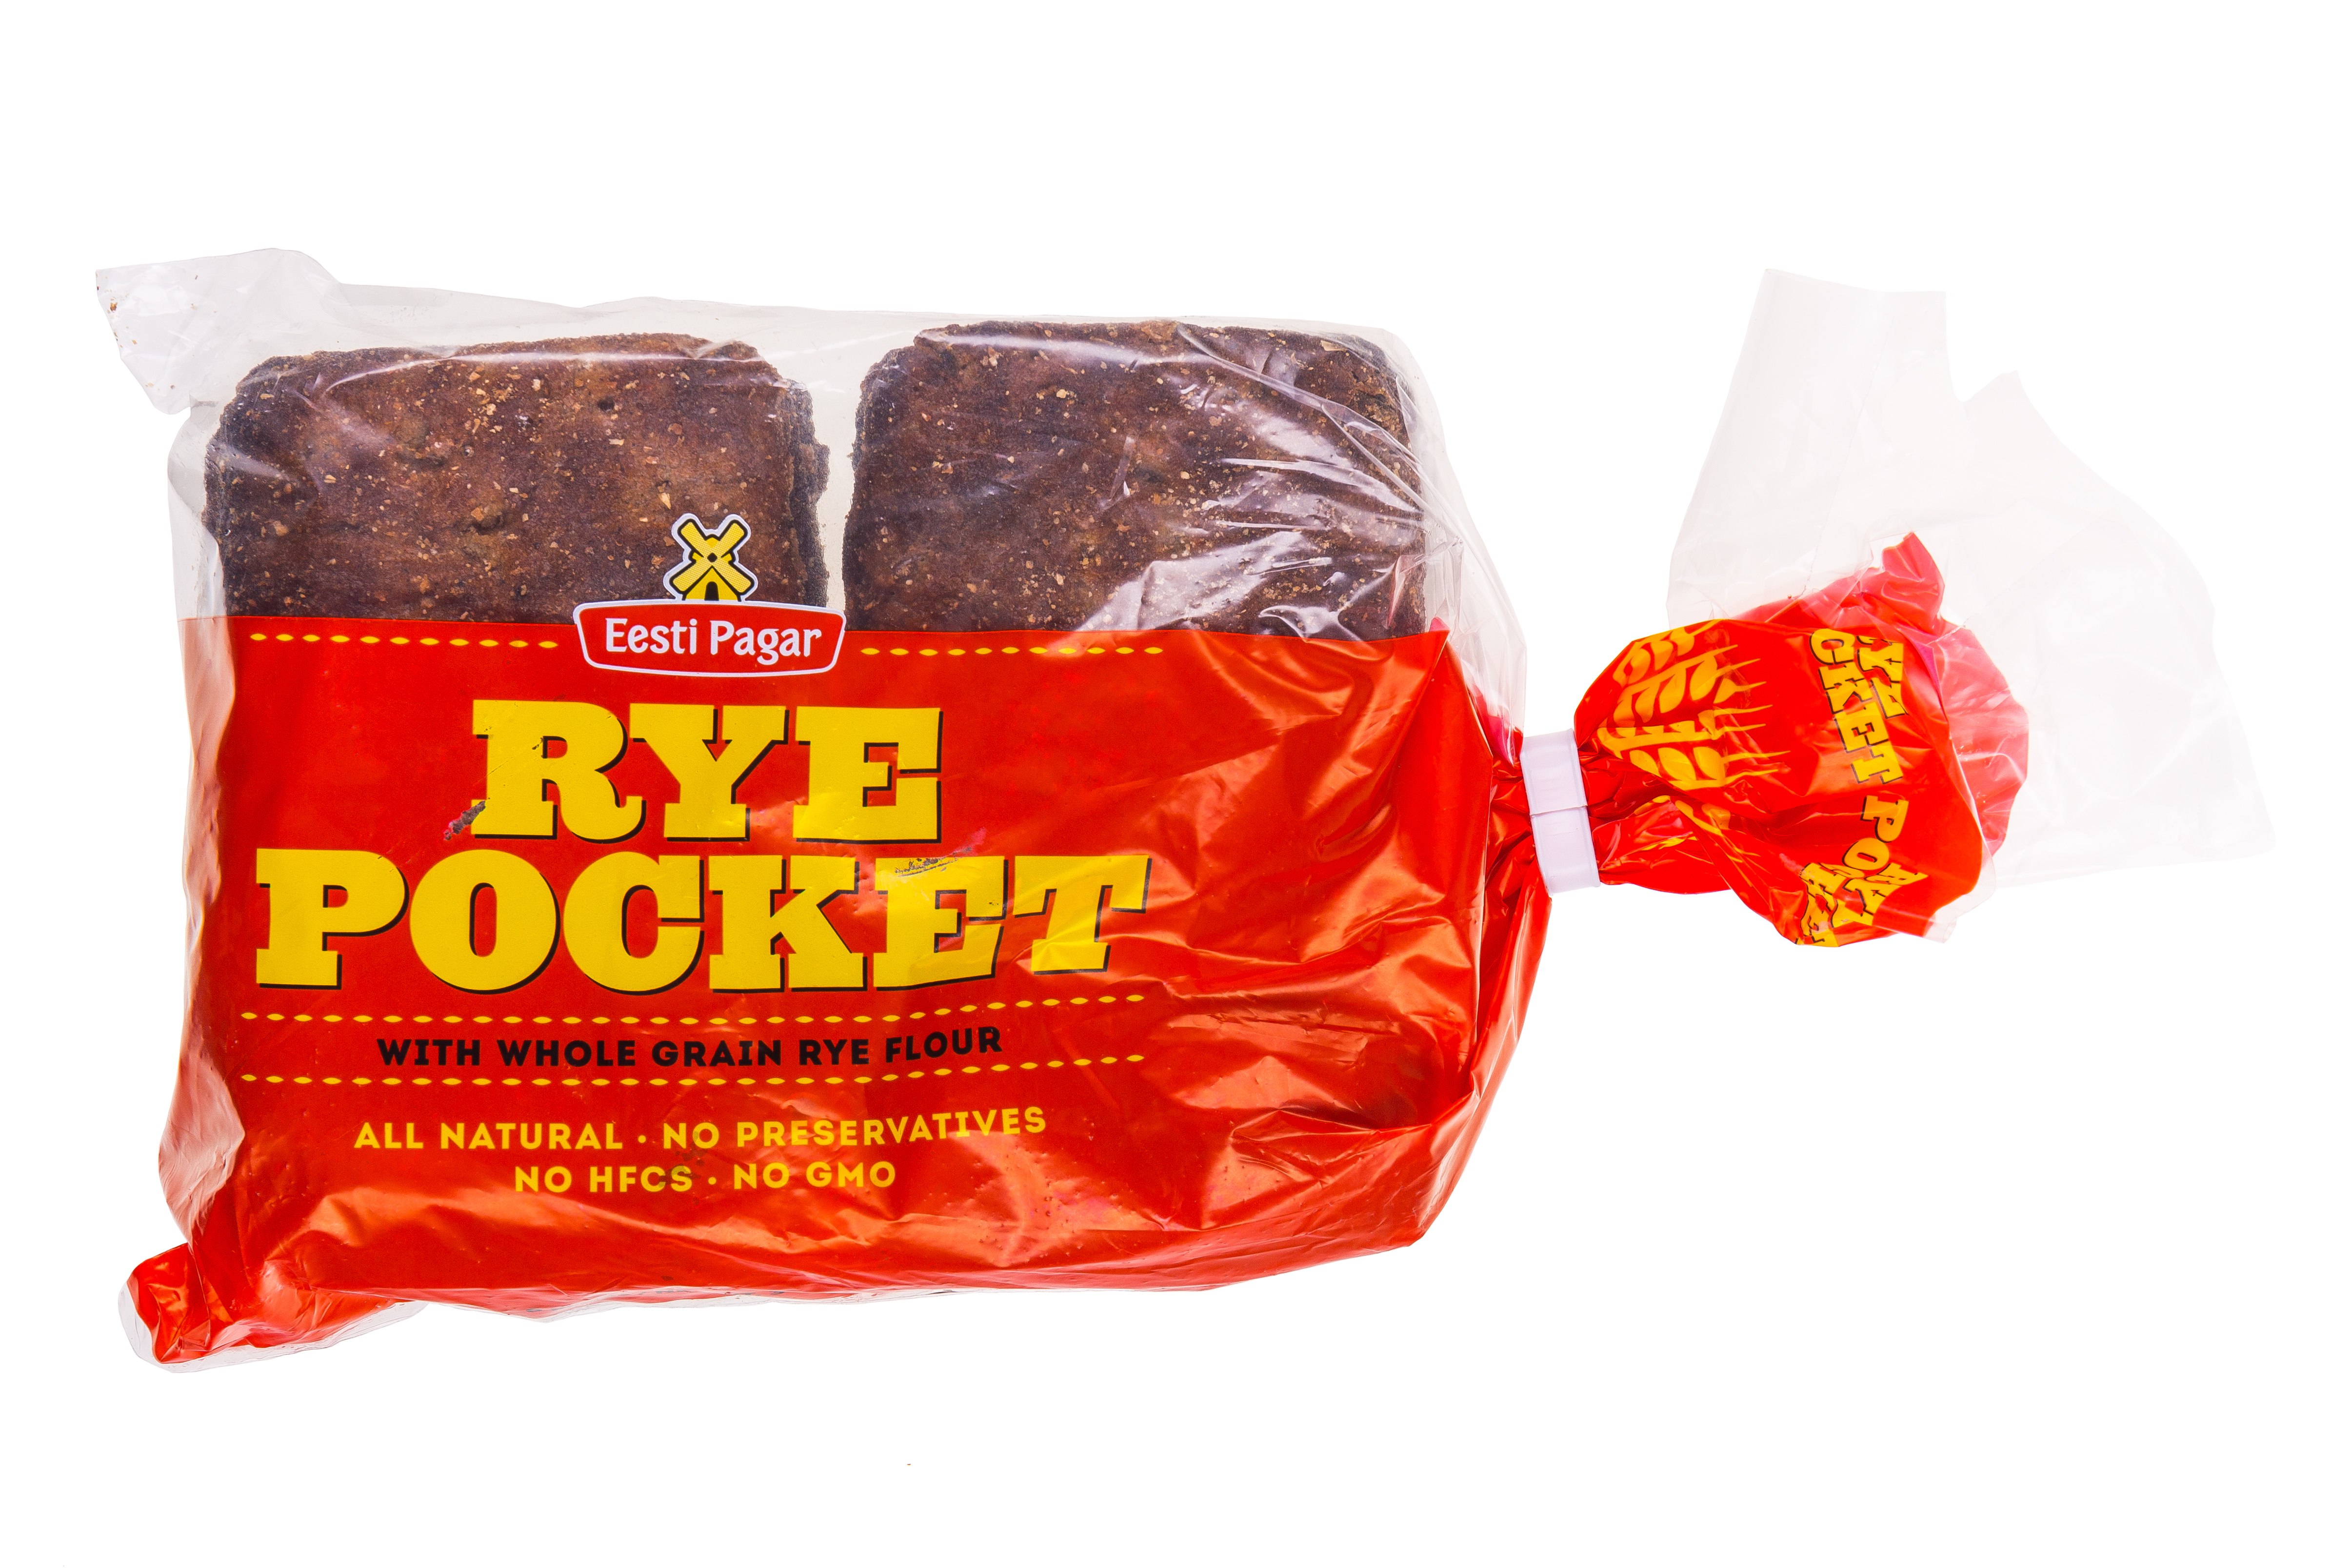 Rye Pocket